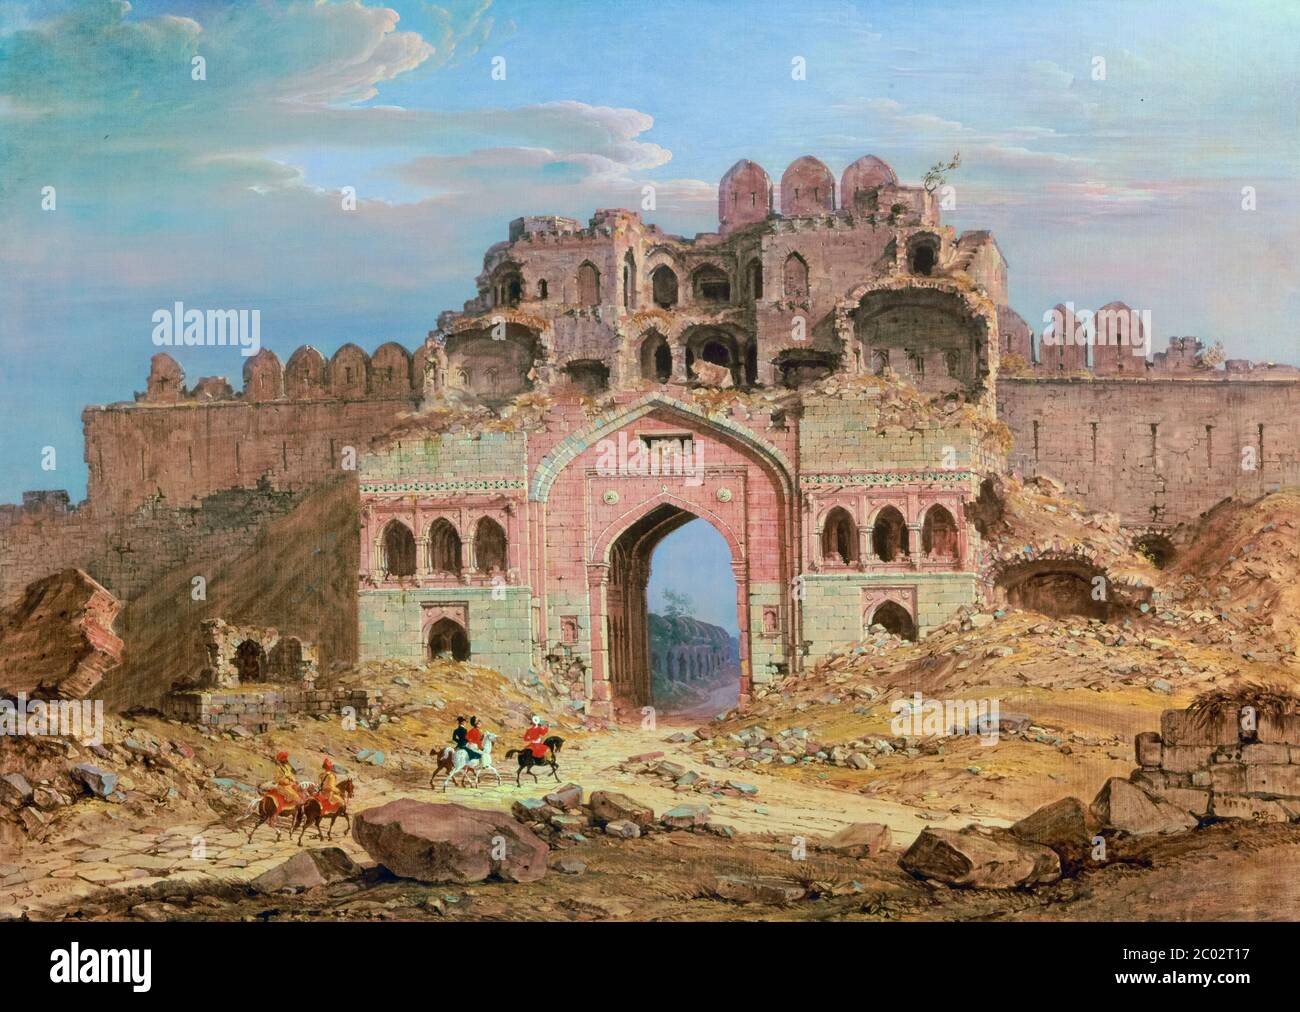 Inside the Main Entrance of the Purana Qila, Delhi, landscape painting by Robert Smith, 1823 Stock Photo